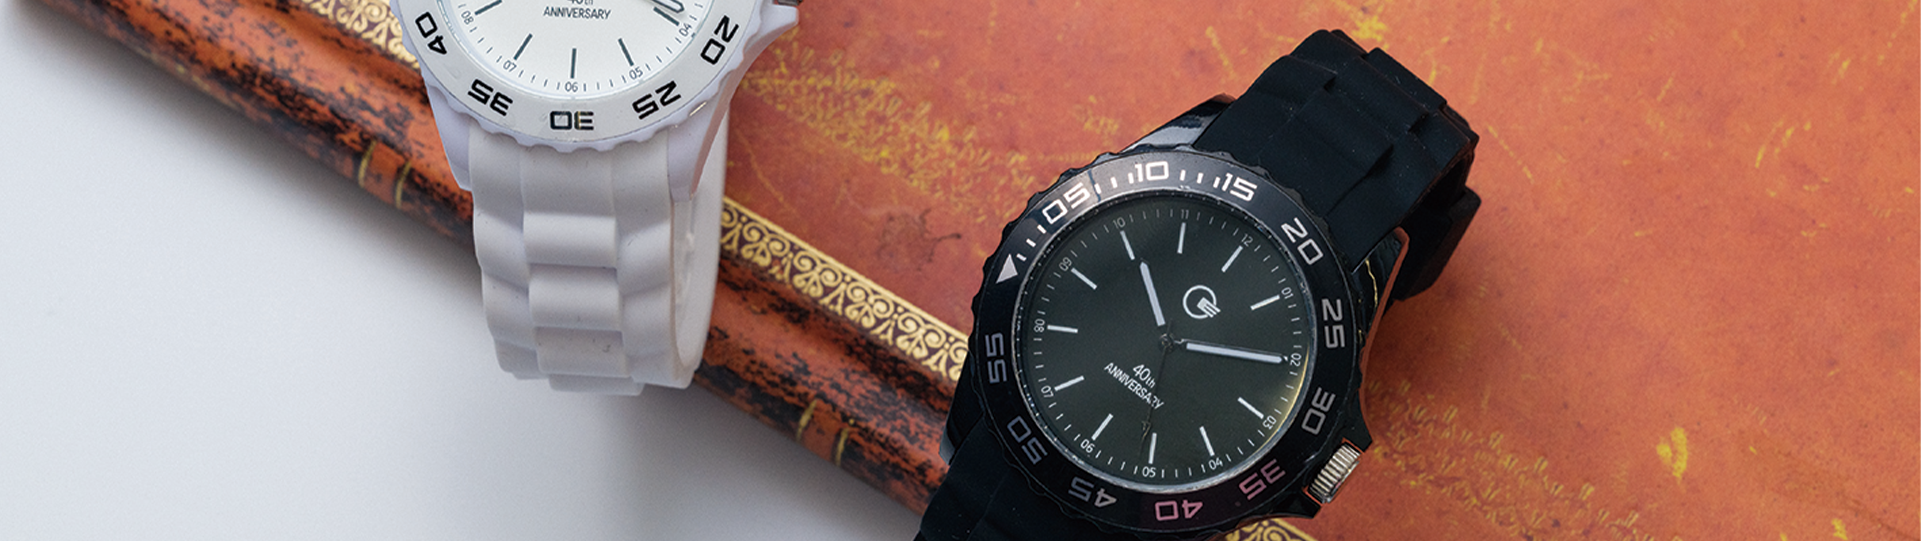 オリジナル腕時計のイメージ